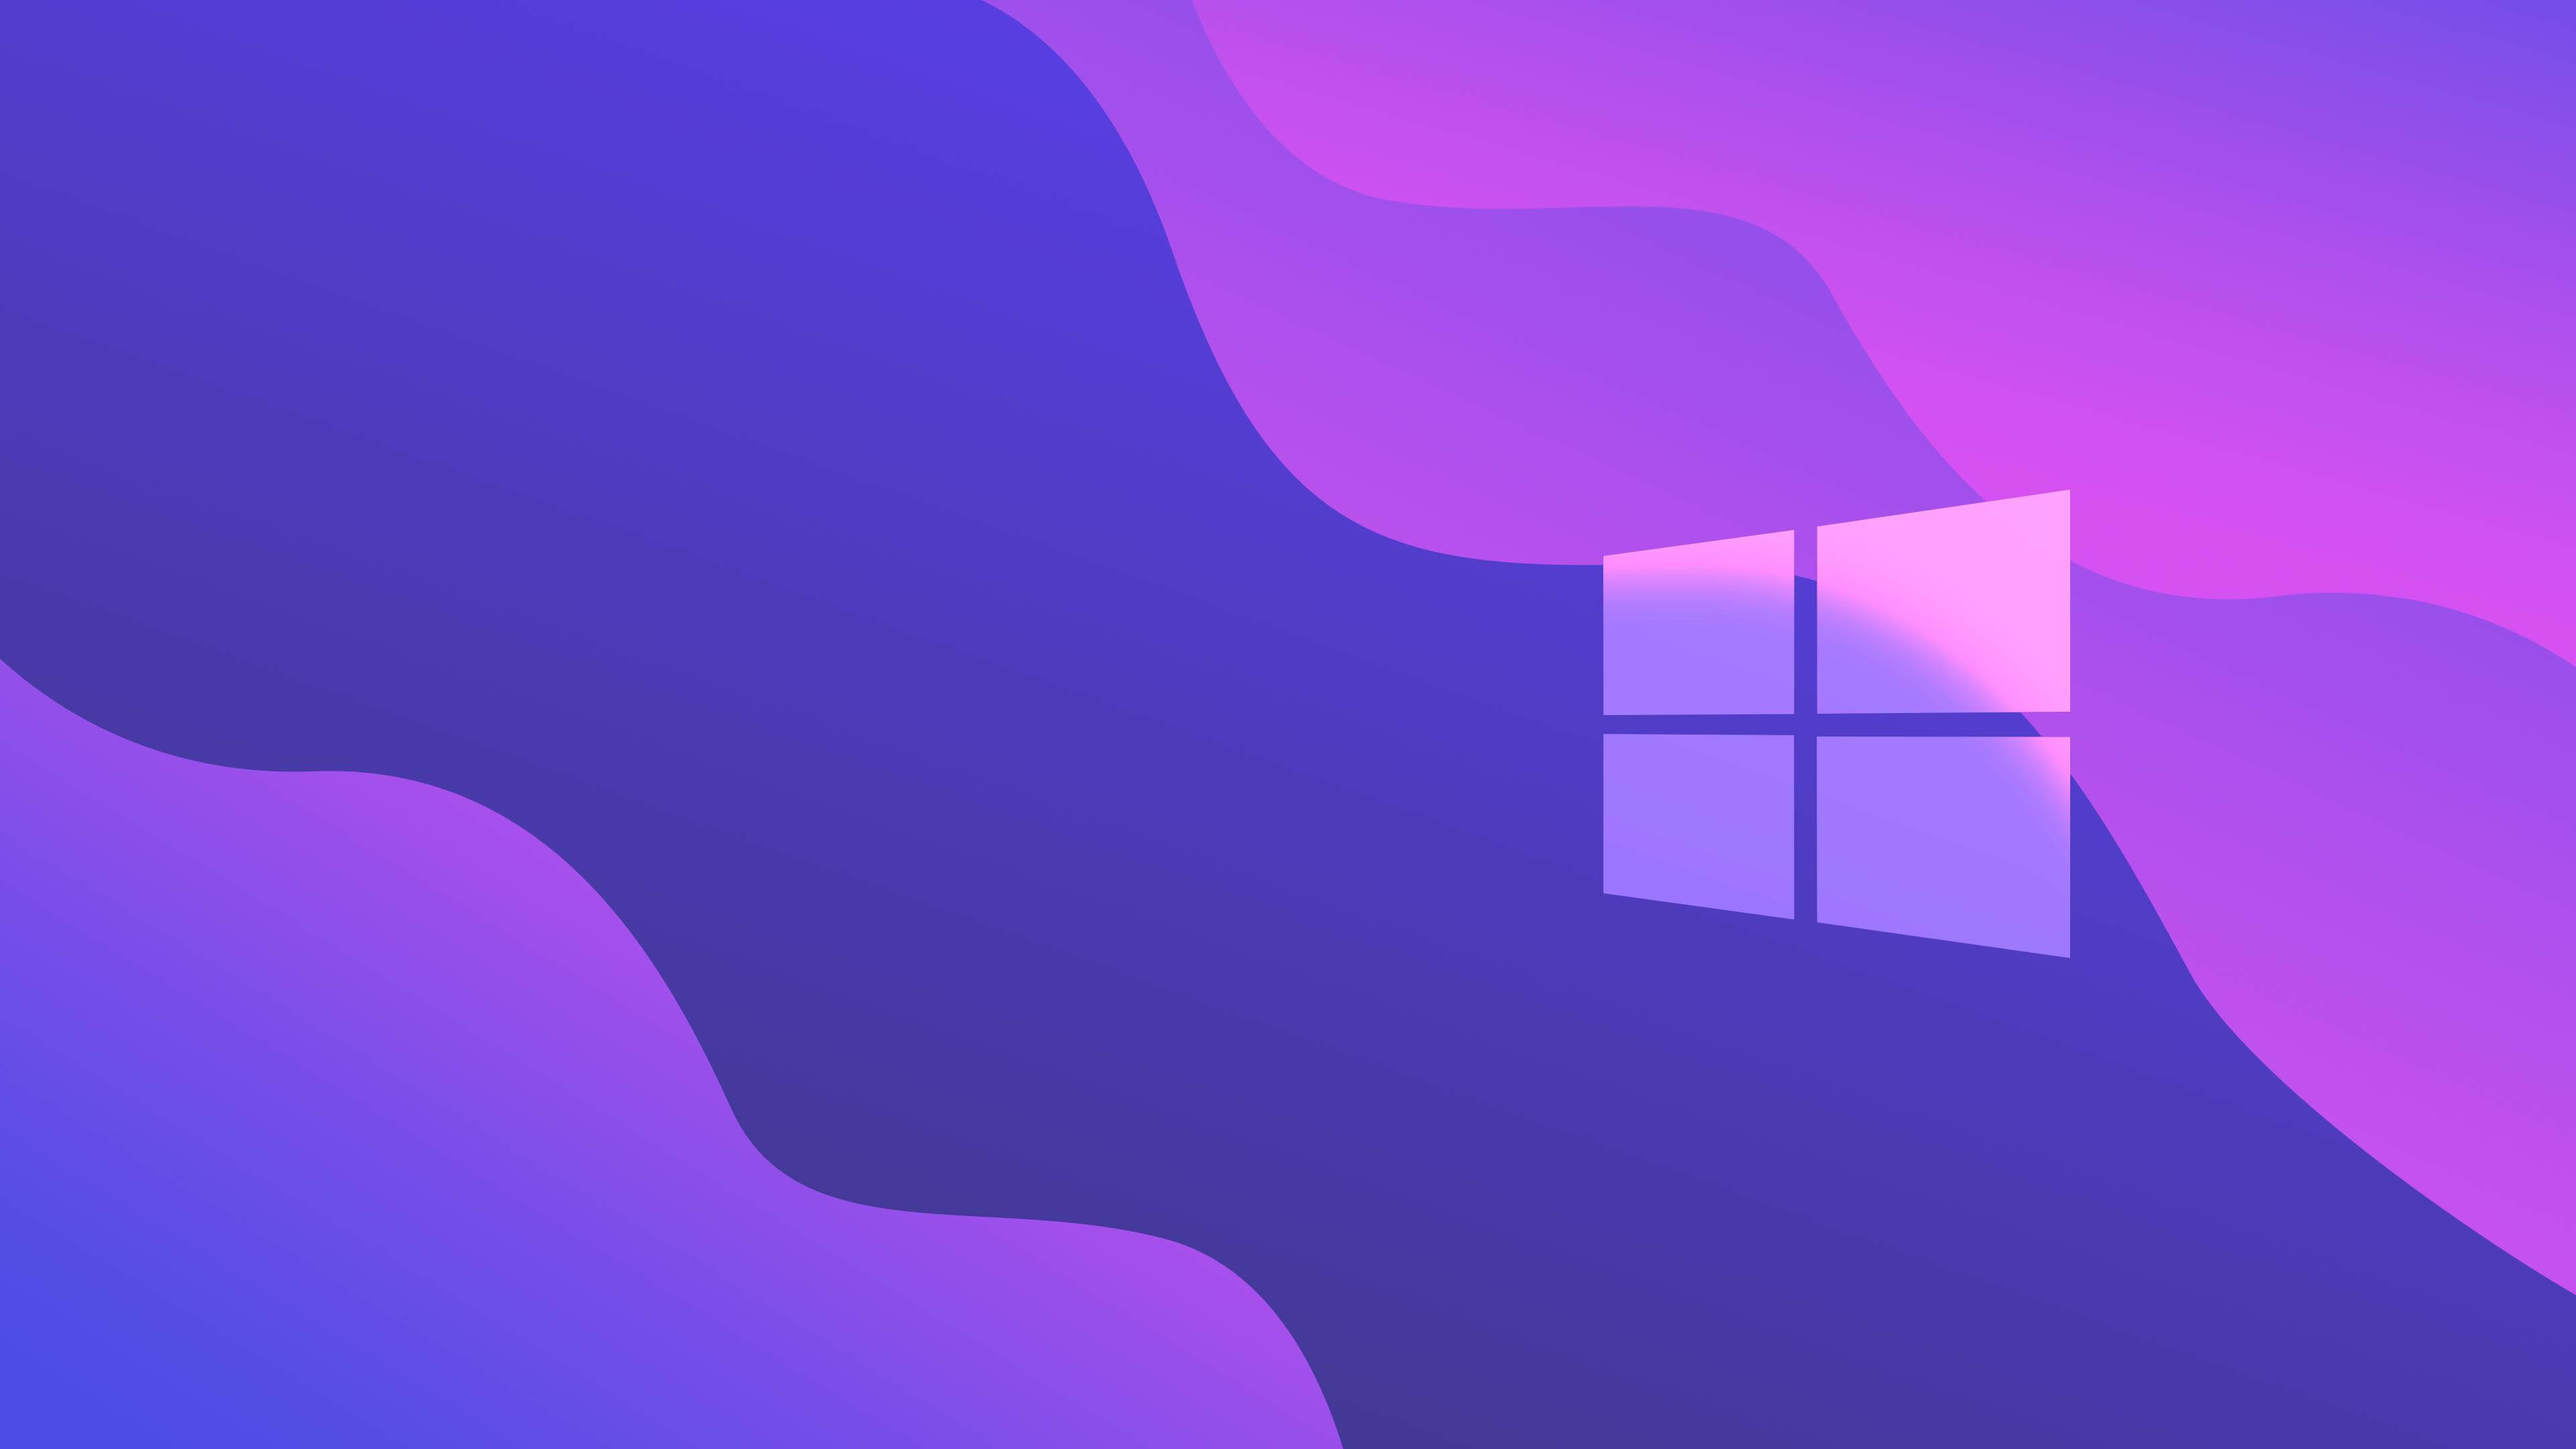 Hãy tận hưởng những hình nền đẹp 4K tuyệt đẹp cho Windows 10 trên máy tính của bạn. Tất cả những hình ảnh tuyệt vời với độ phân giải cao, màu sắc sắc nét, tạo nên một trải nghiệm tuyệt vời khi sử dụng máy tính của bạn. Tìm kiếm và tận hưởng những hình nền nổi bật nhất dành cho Windows 10 của bạn.